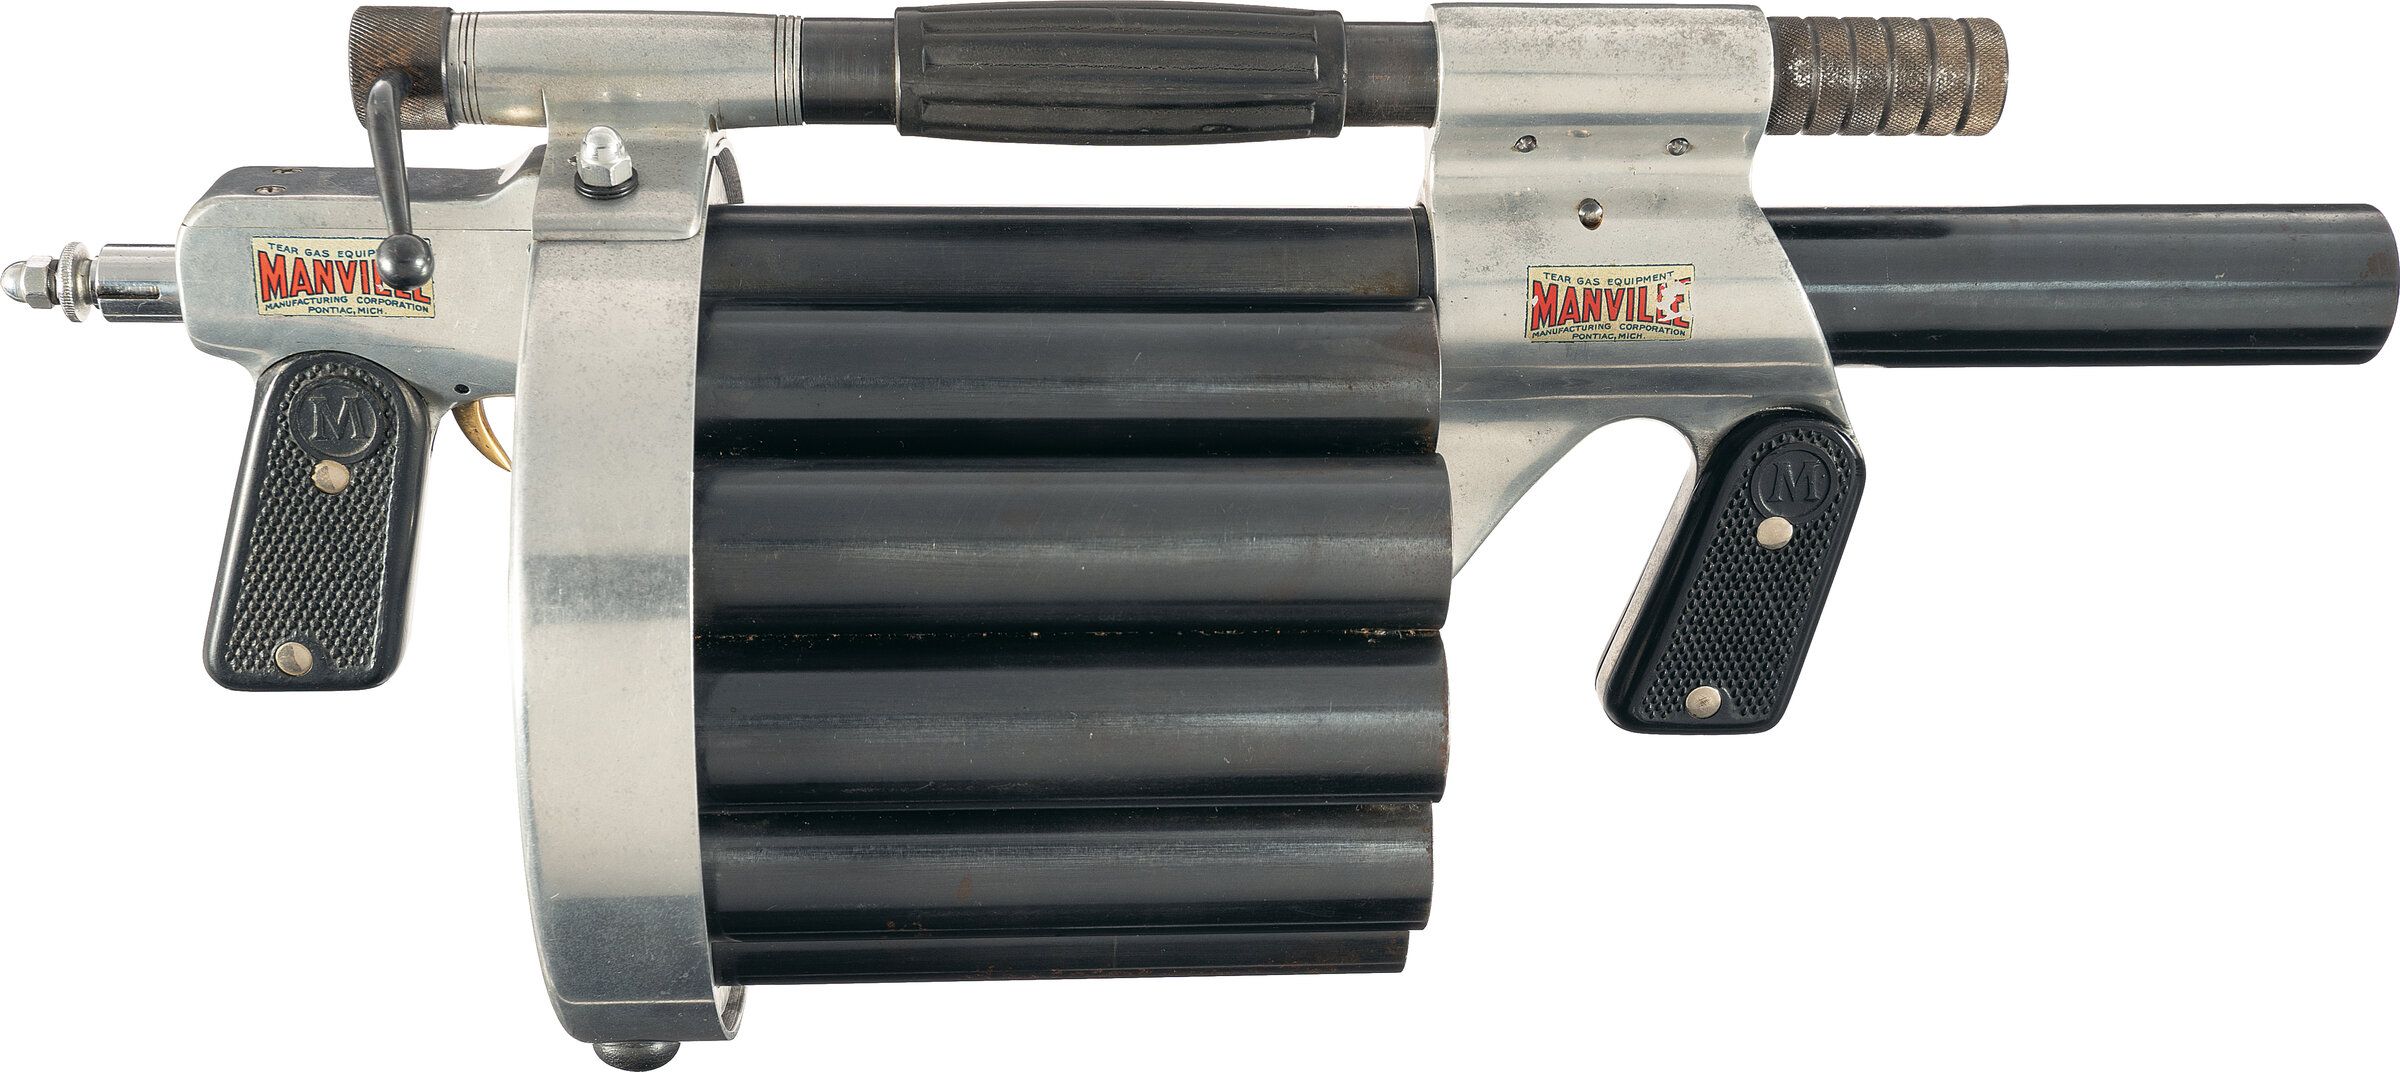 Second Model Manville Gun 26.5mm Tear Gas Launcher | Rock Island 